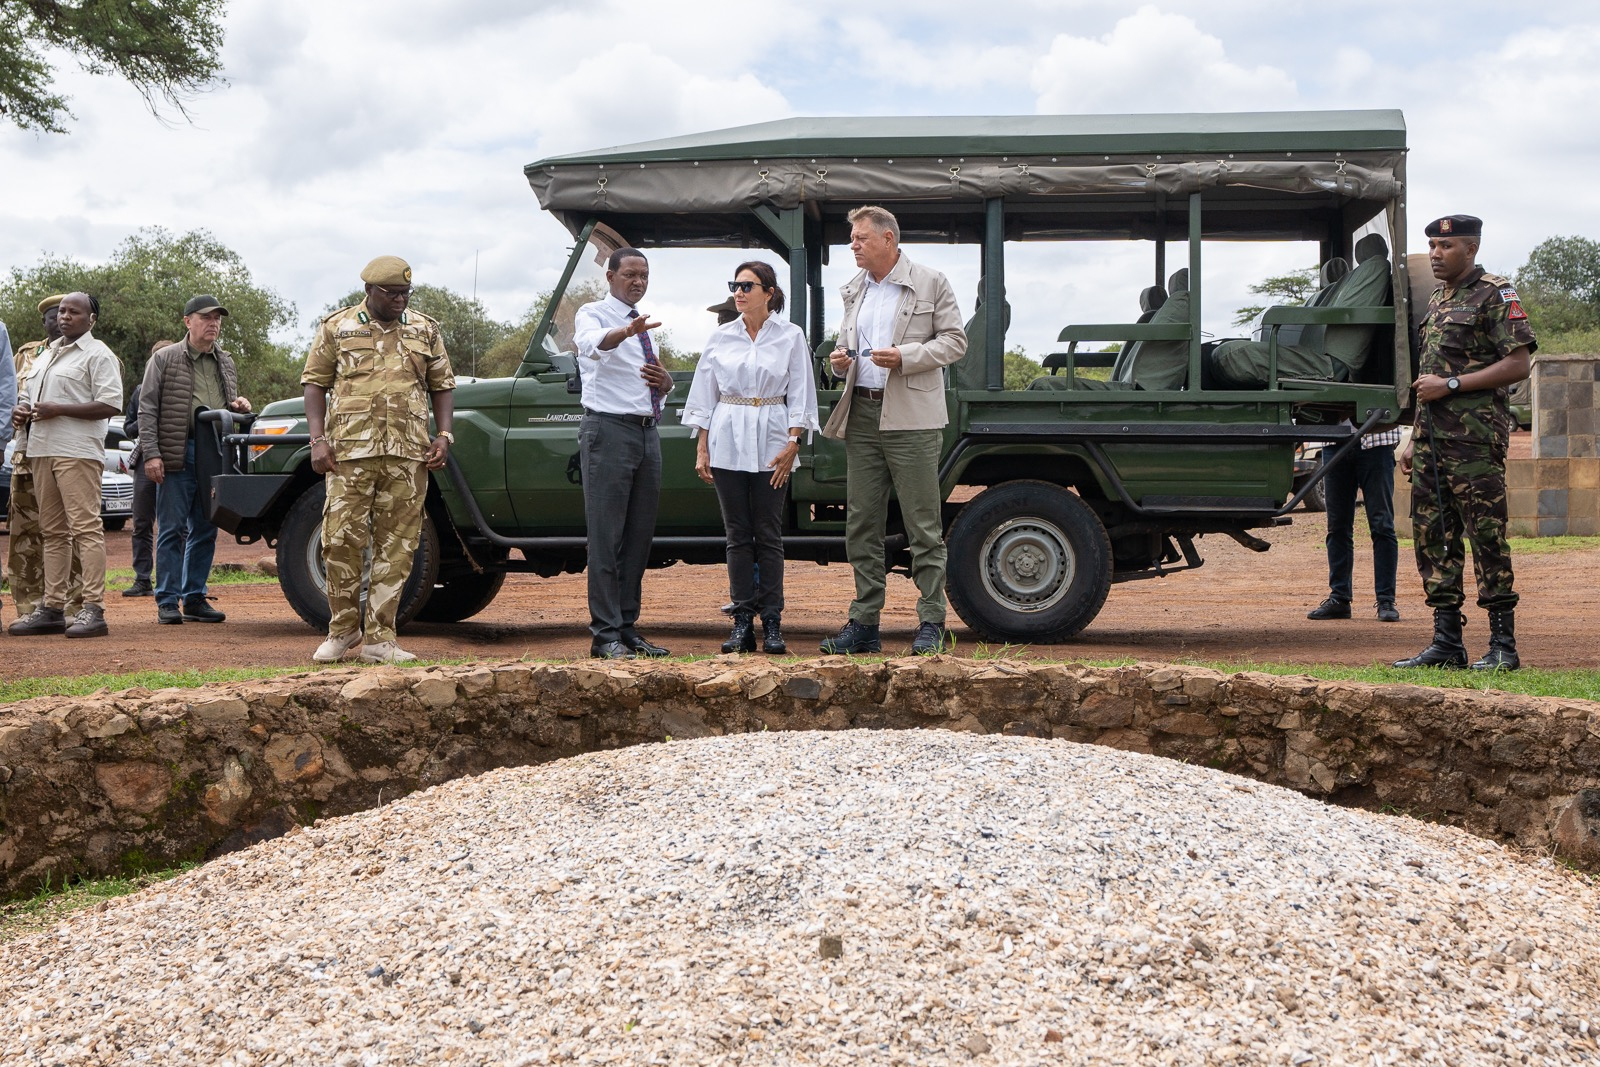 FOTO Klaus Iohannis și soția sa au fost în safari / Următoarea destinație: Tanzania - Iohannis va merge și în Zanzibar și va vizita atracțiile turistice